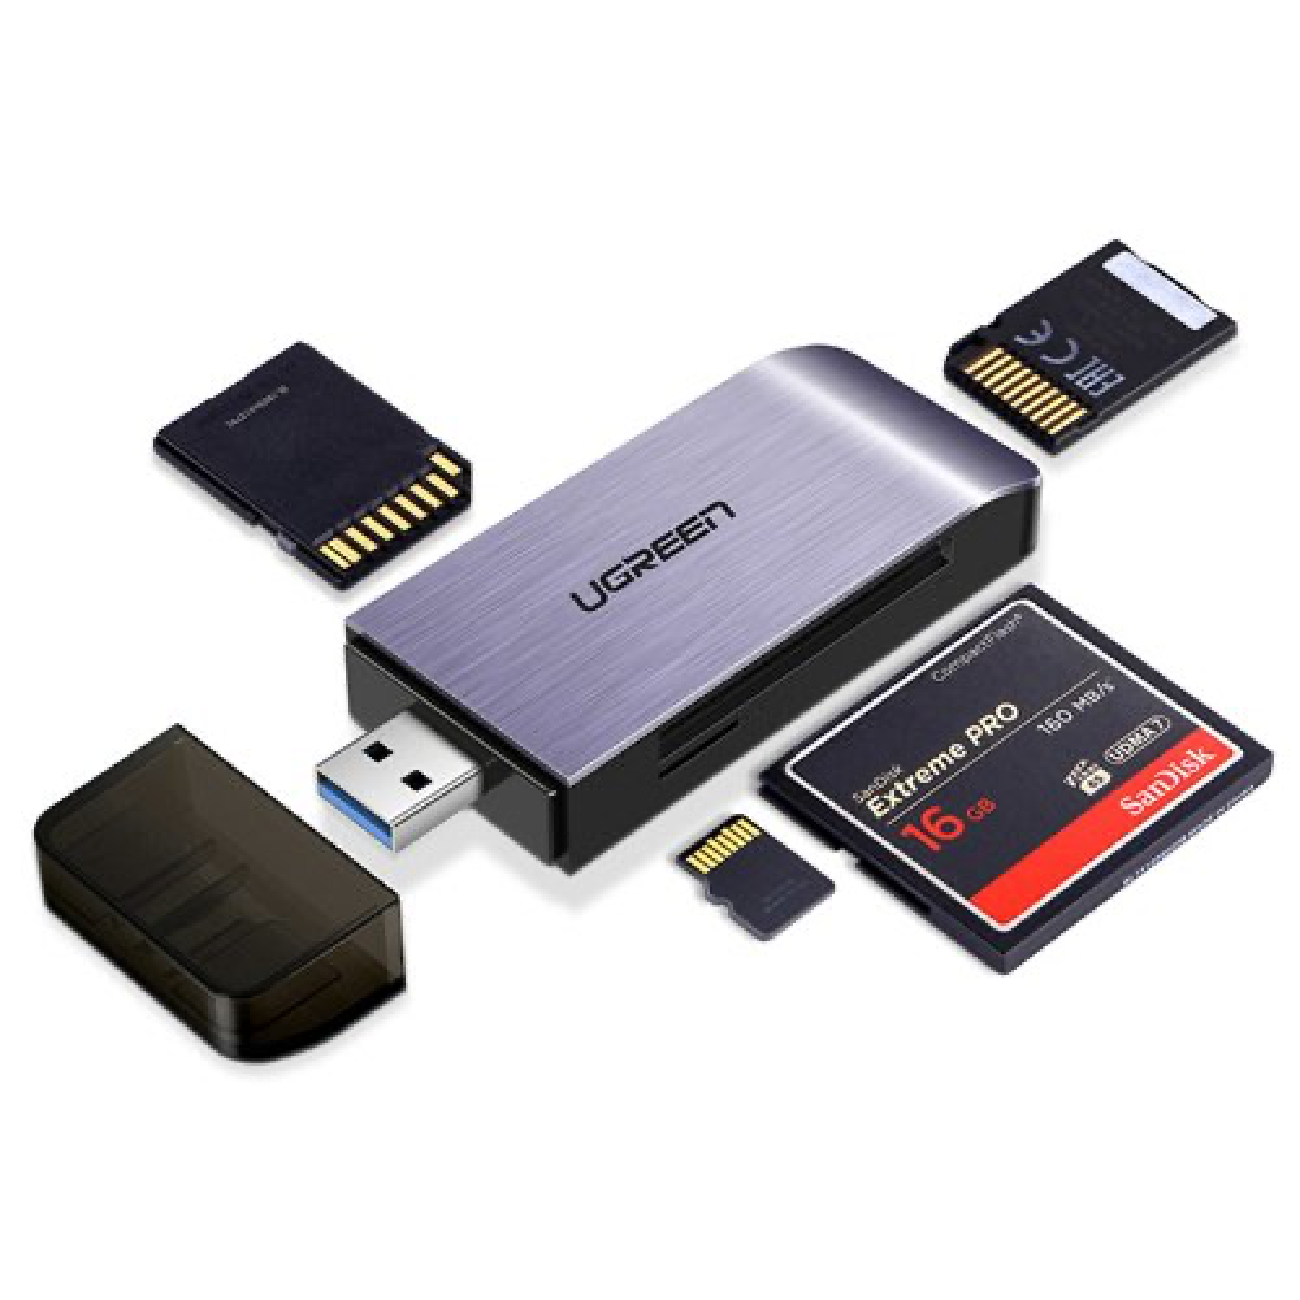 Ugreen USB 3.0 card reader